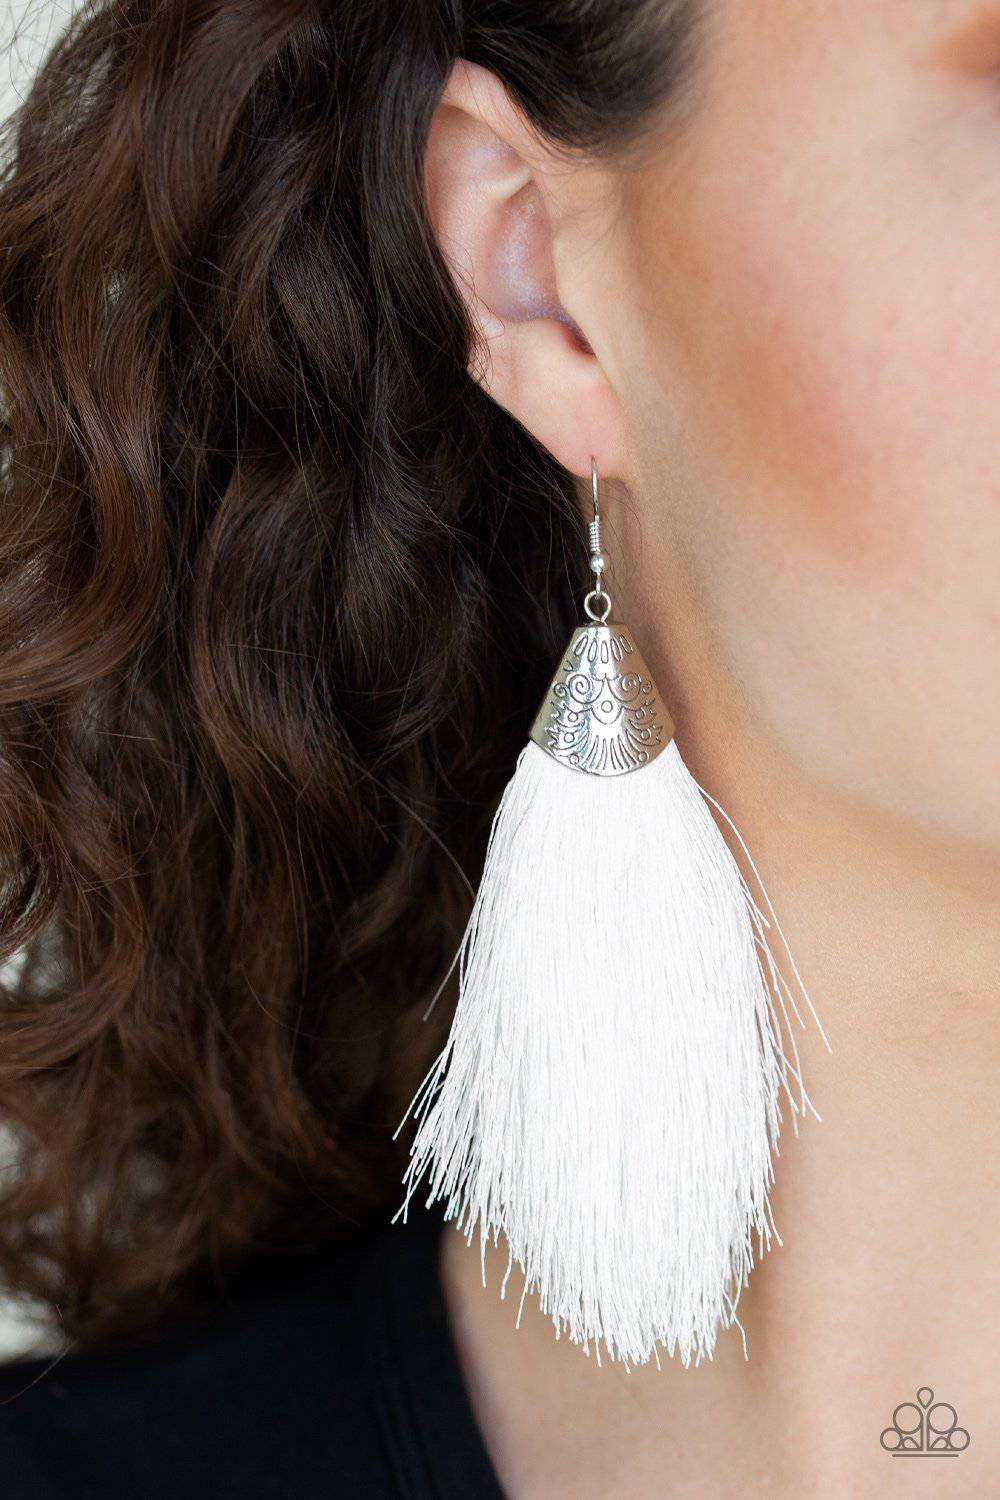 Tassel Temptress - White Tassel Earrings - Paparazzi Accessories - GlaMarous Titi Jewels